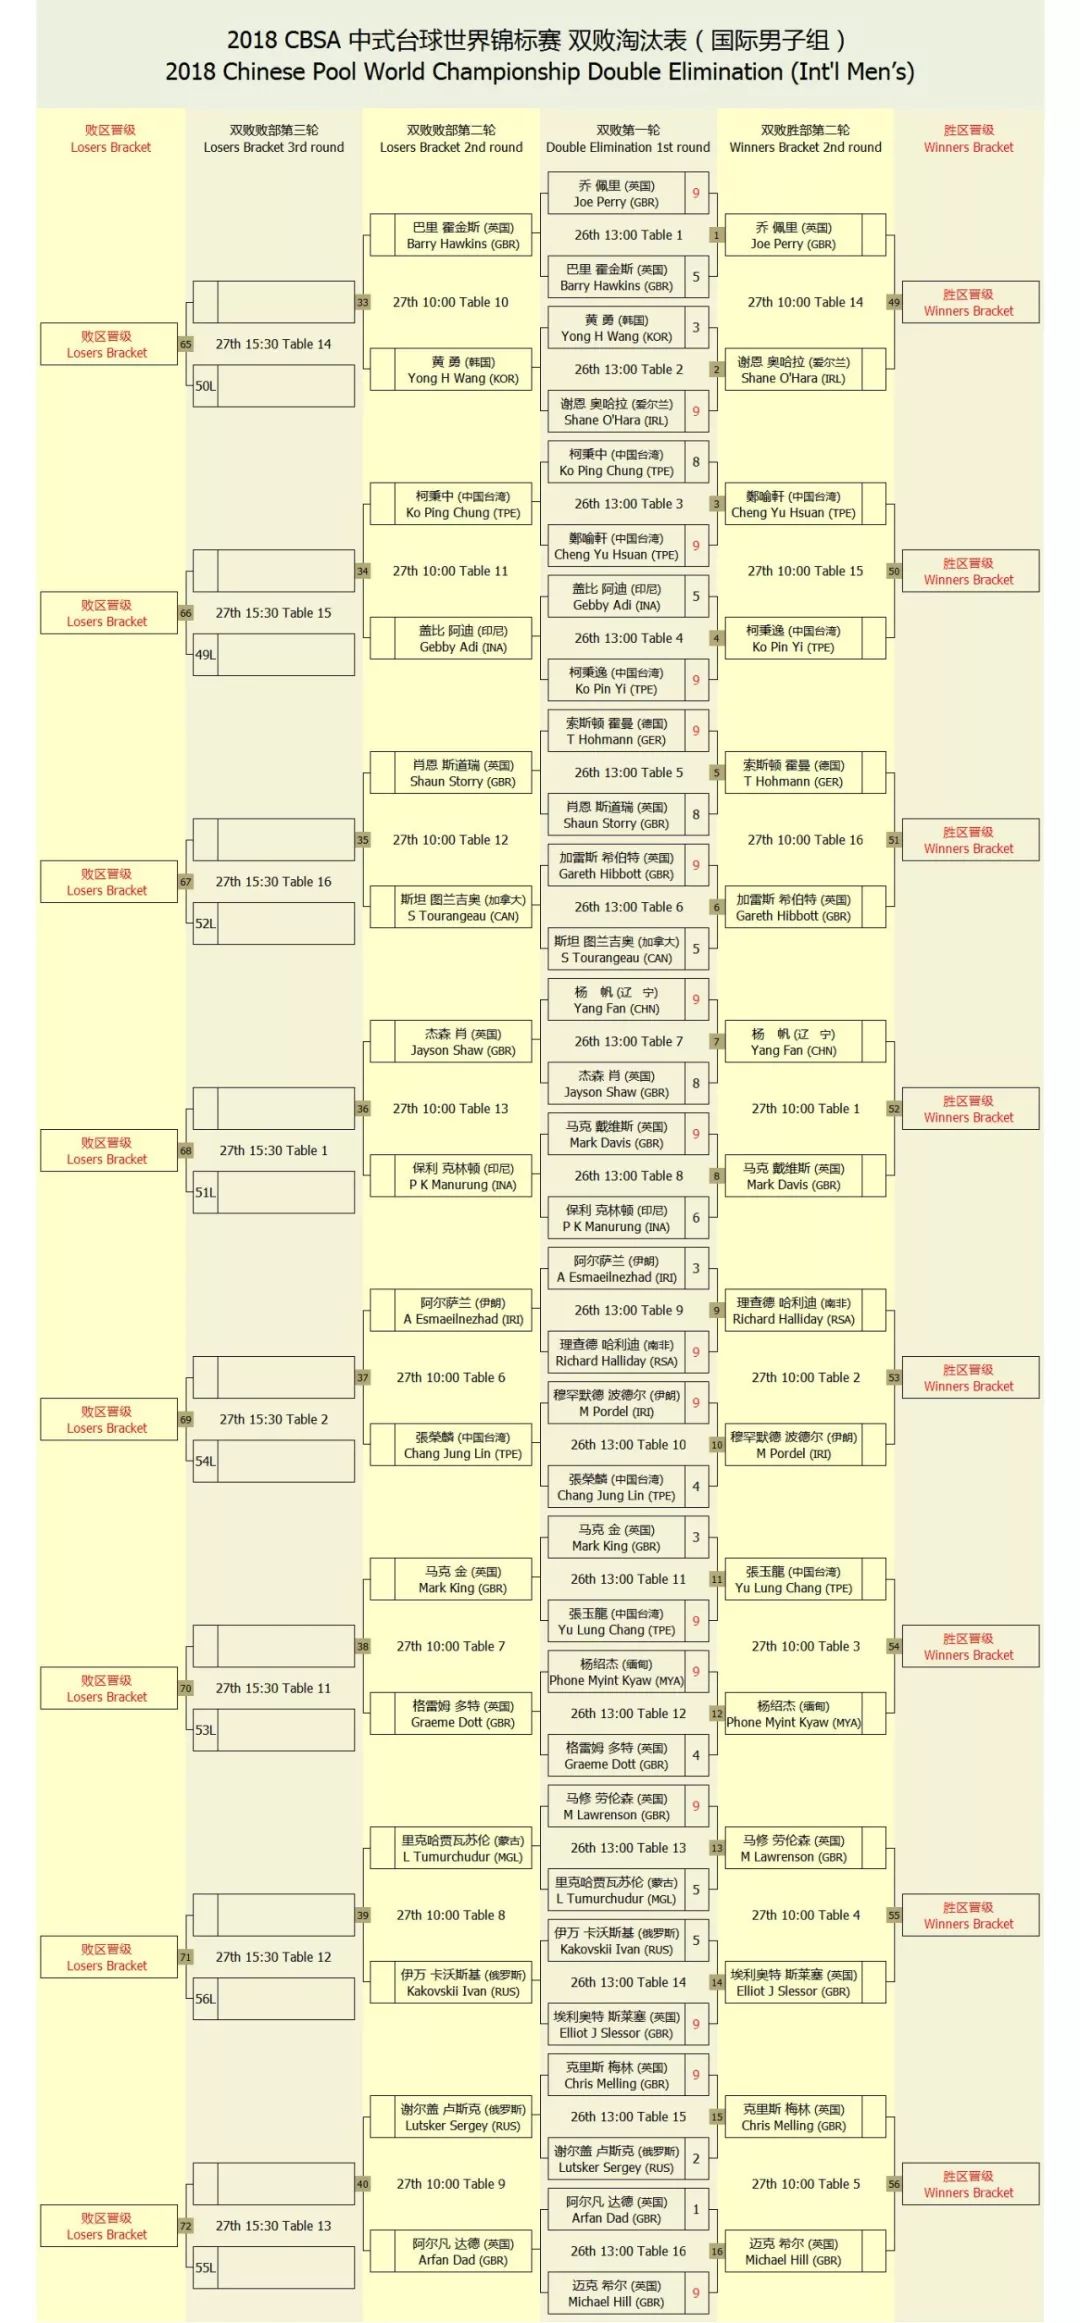 【对阵表】2018cbsa中式台球世锦赛·双败淘汰赛(男子组)